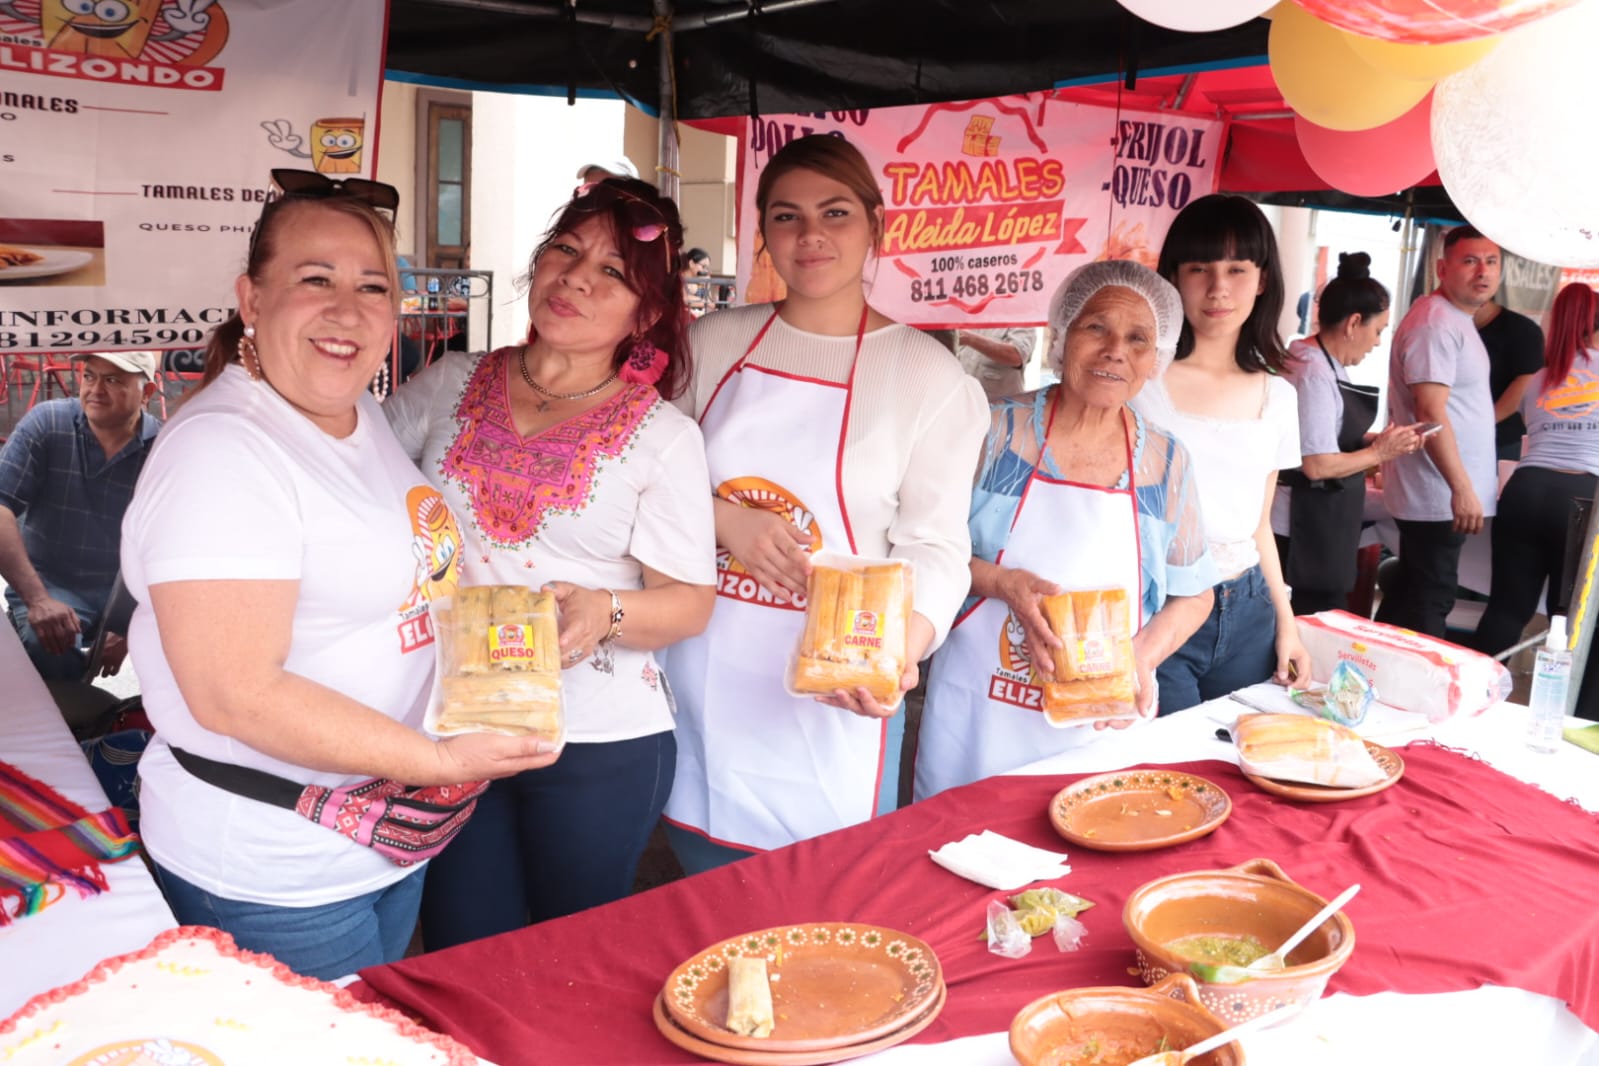 Designan a los tamales de Juárez como una maravilla cultural de Nuevo León